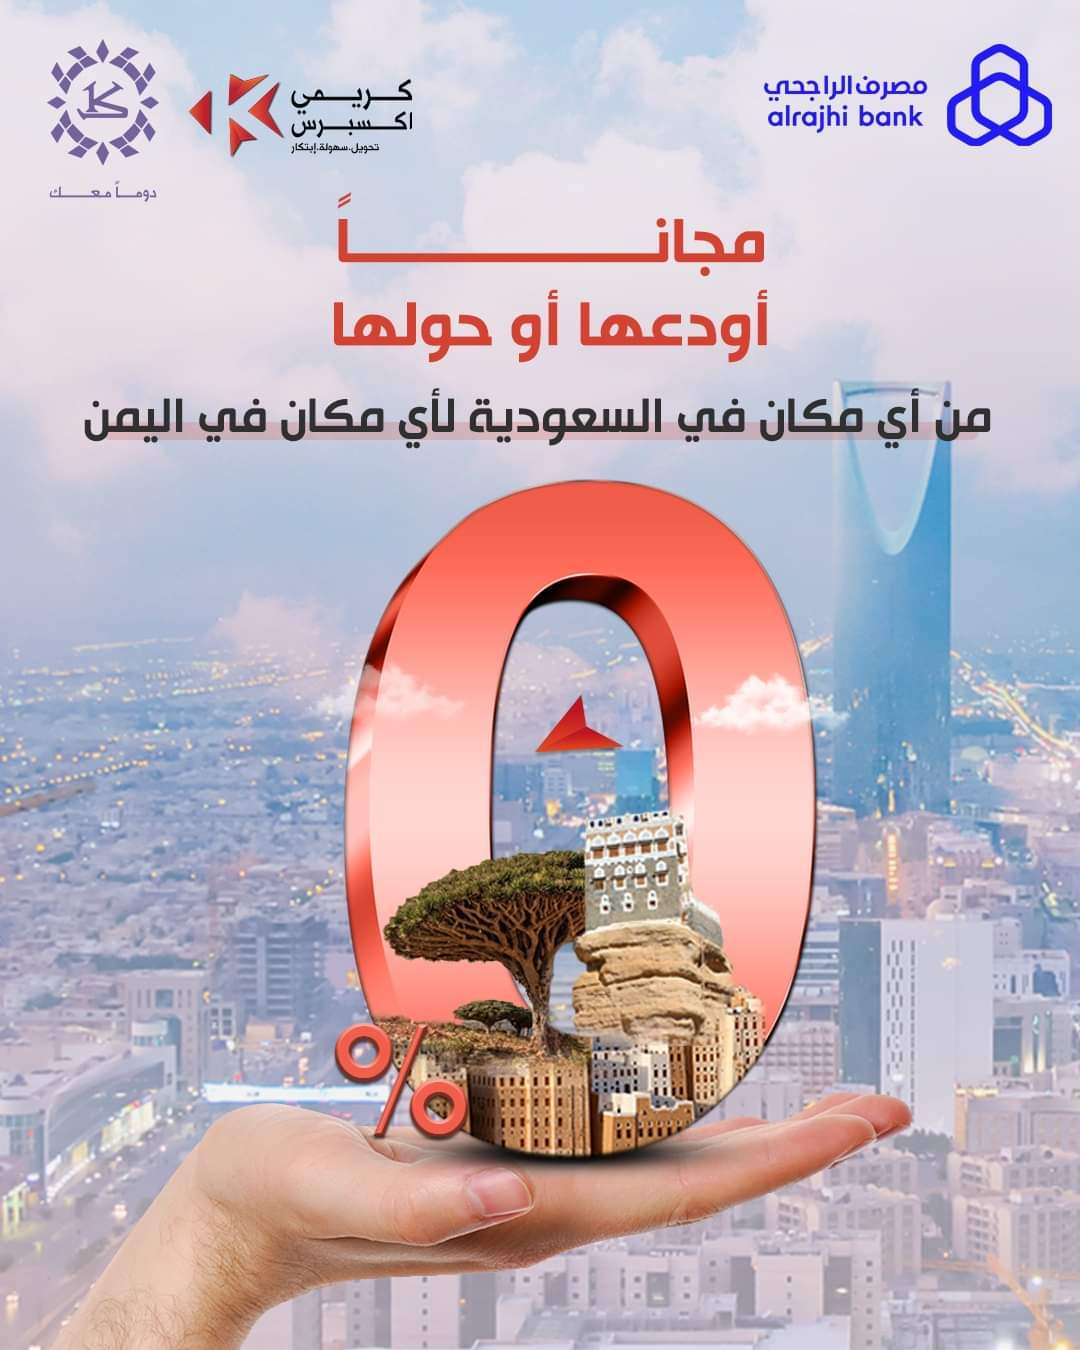 احد اكبر البنوك في اليمن يعلن عن التحويل مجانا من هذه الدولة الى اليمن